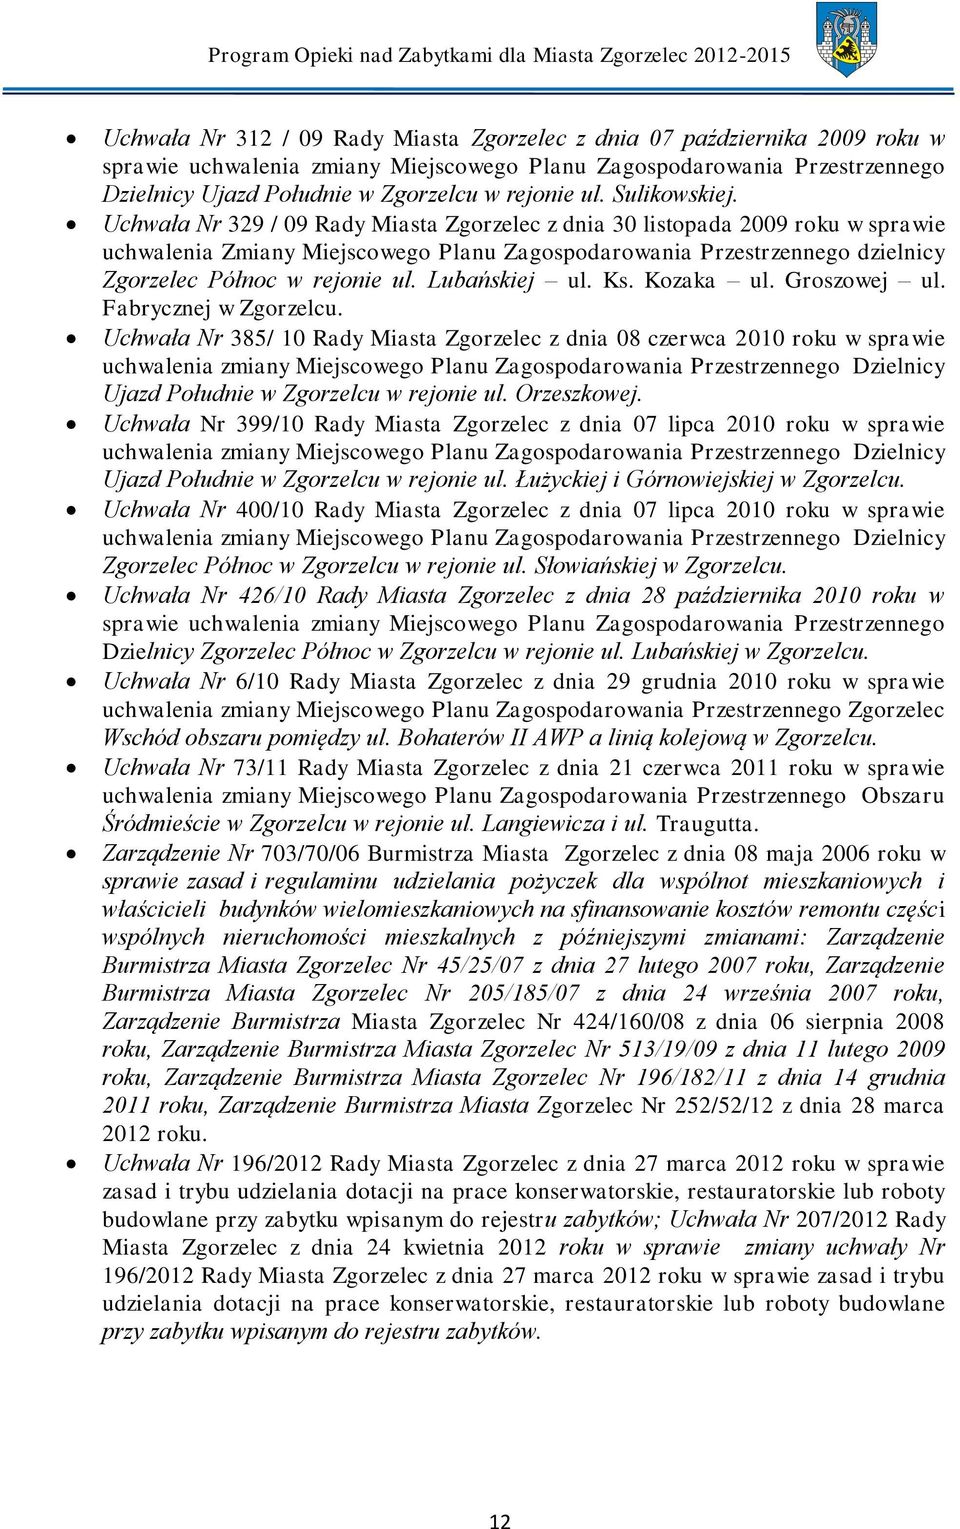 Uchwała Nr 329 / 09 Rady Miasta Zgorzelec z dnia 30 listopada 2009 roku w sprawie uchwalenia Zmiany Miejscowego Planu Zagospodarowania Przestrzennego dzielnicy Zgorzelec Północ w rejonie ul.